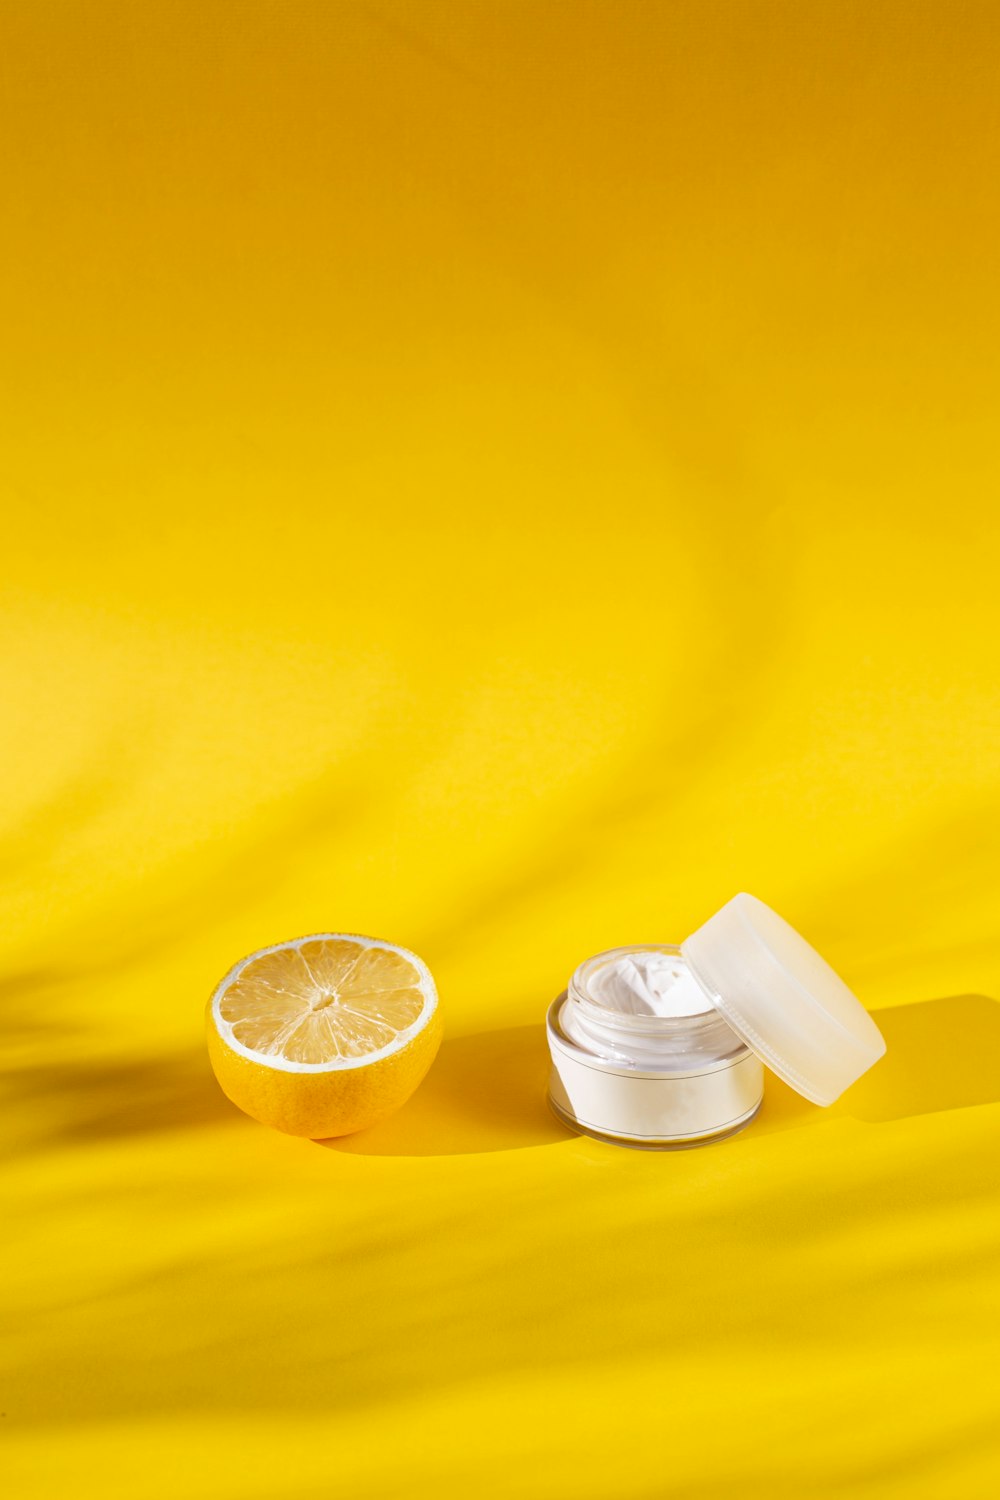 sliced lemon beside white plastic cup